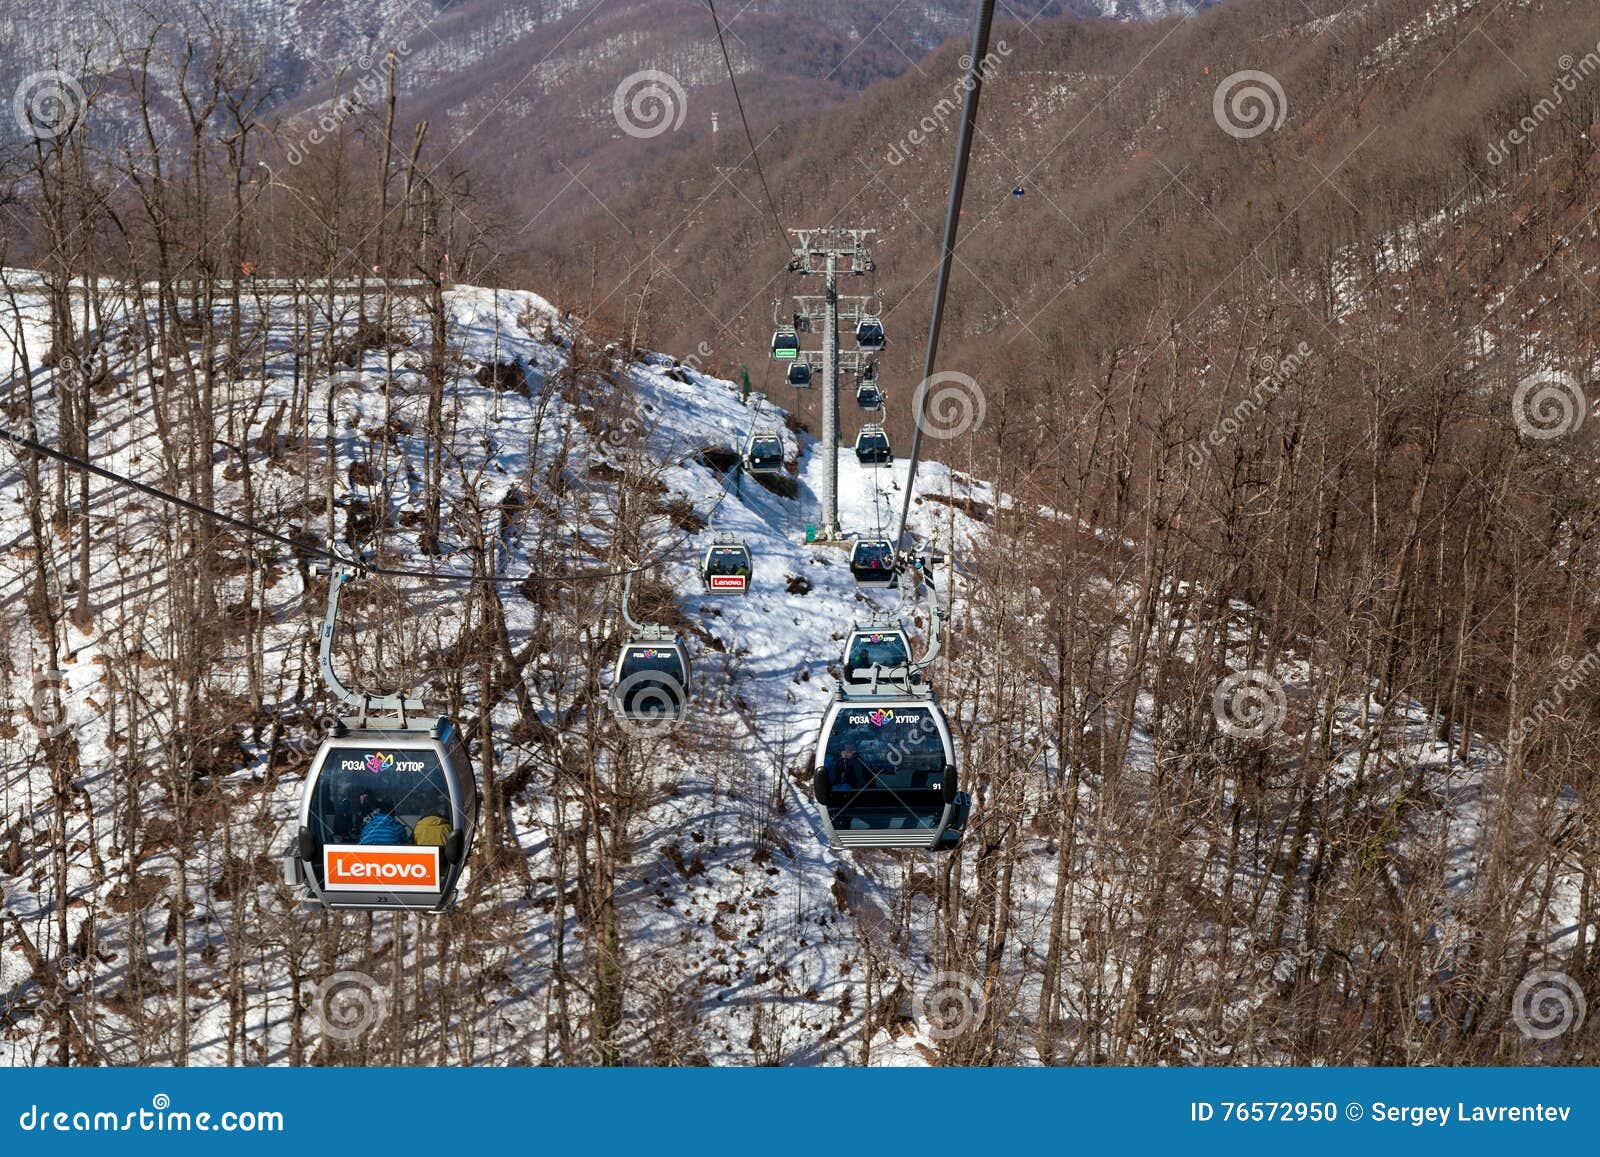 As gôndola levantam na estância de esqui de Rosa Khutor, Sochi, Rússia. Sochi, Rússia - 10 de fevereiro de 2016: Elevador de esqui em Rosa Khutor Alpine Resort